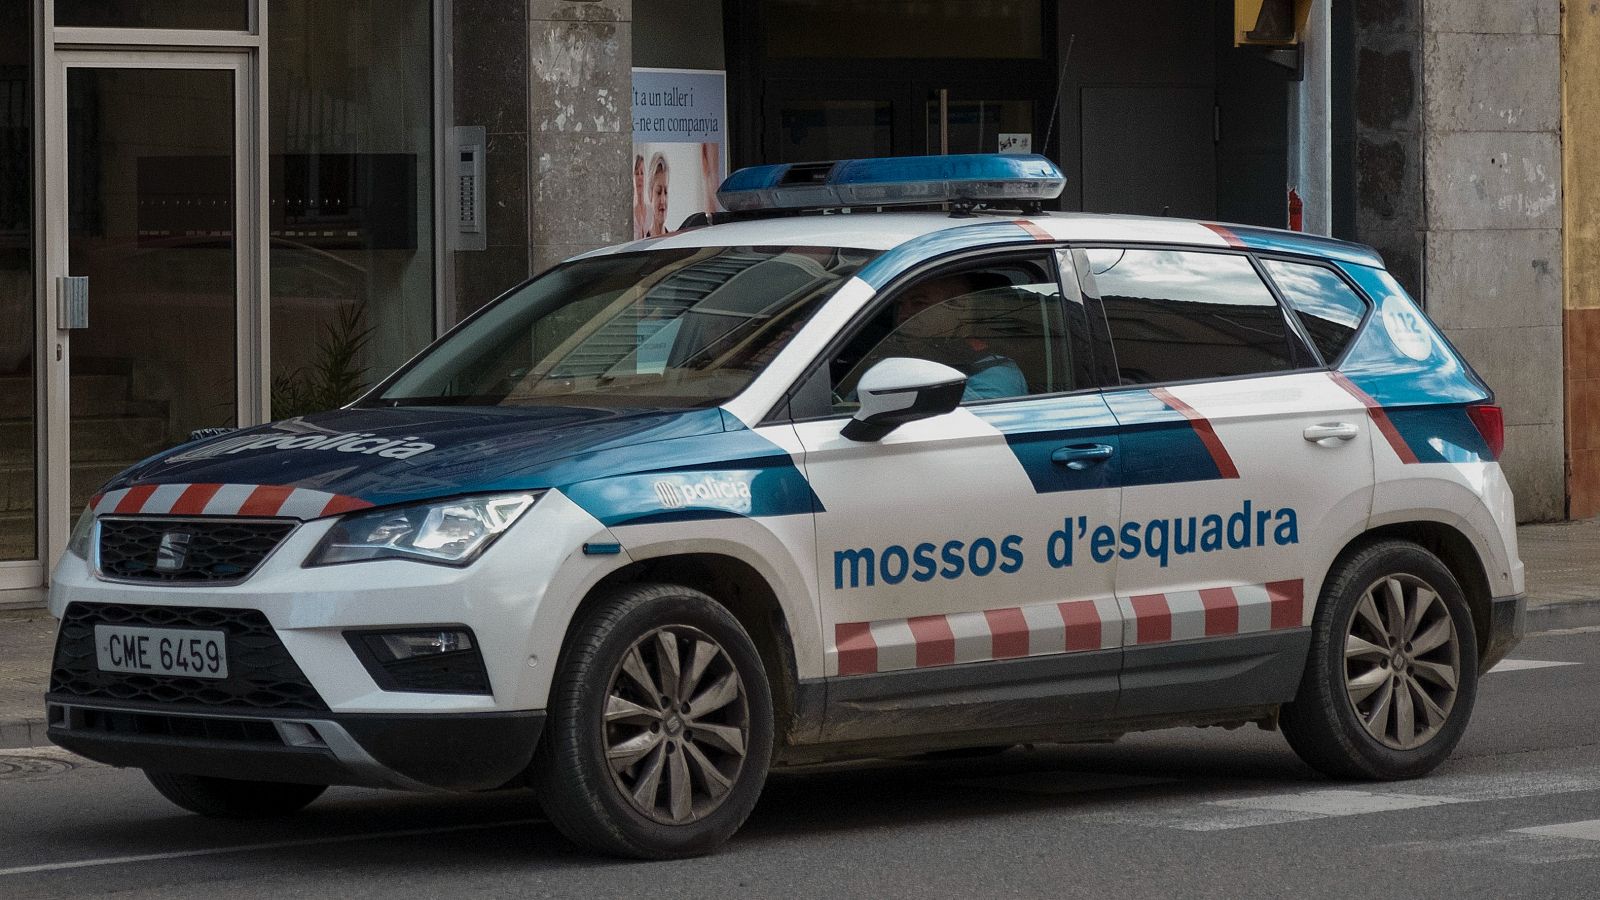 Condenados seis mossos por una agresión racista a un joven